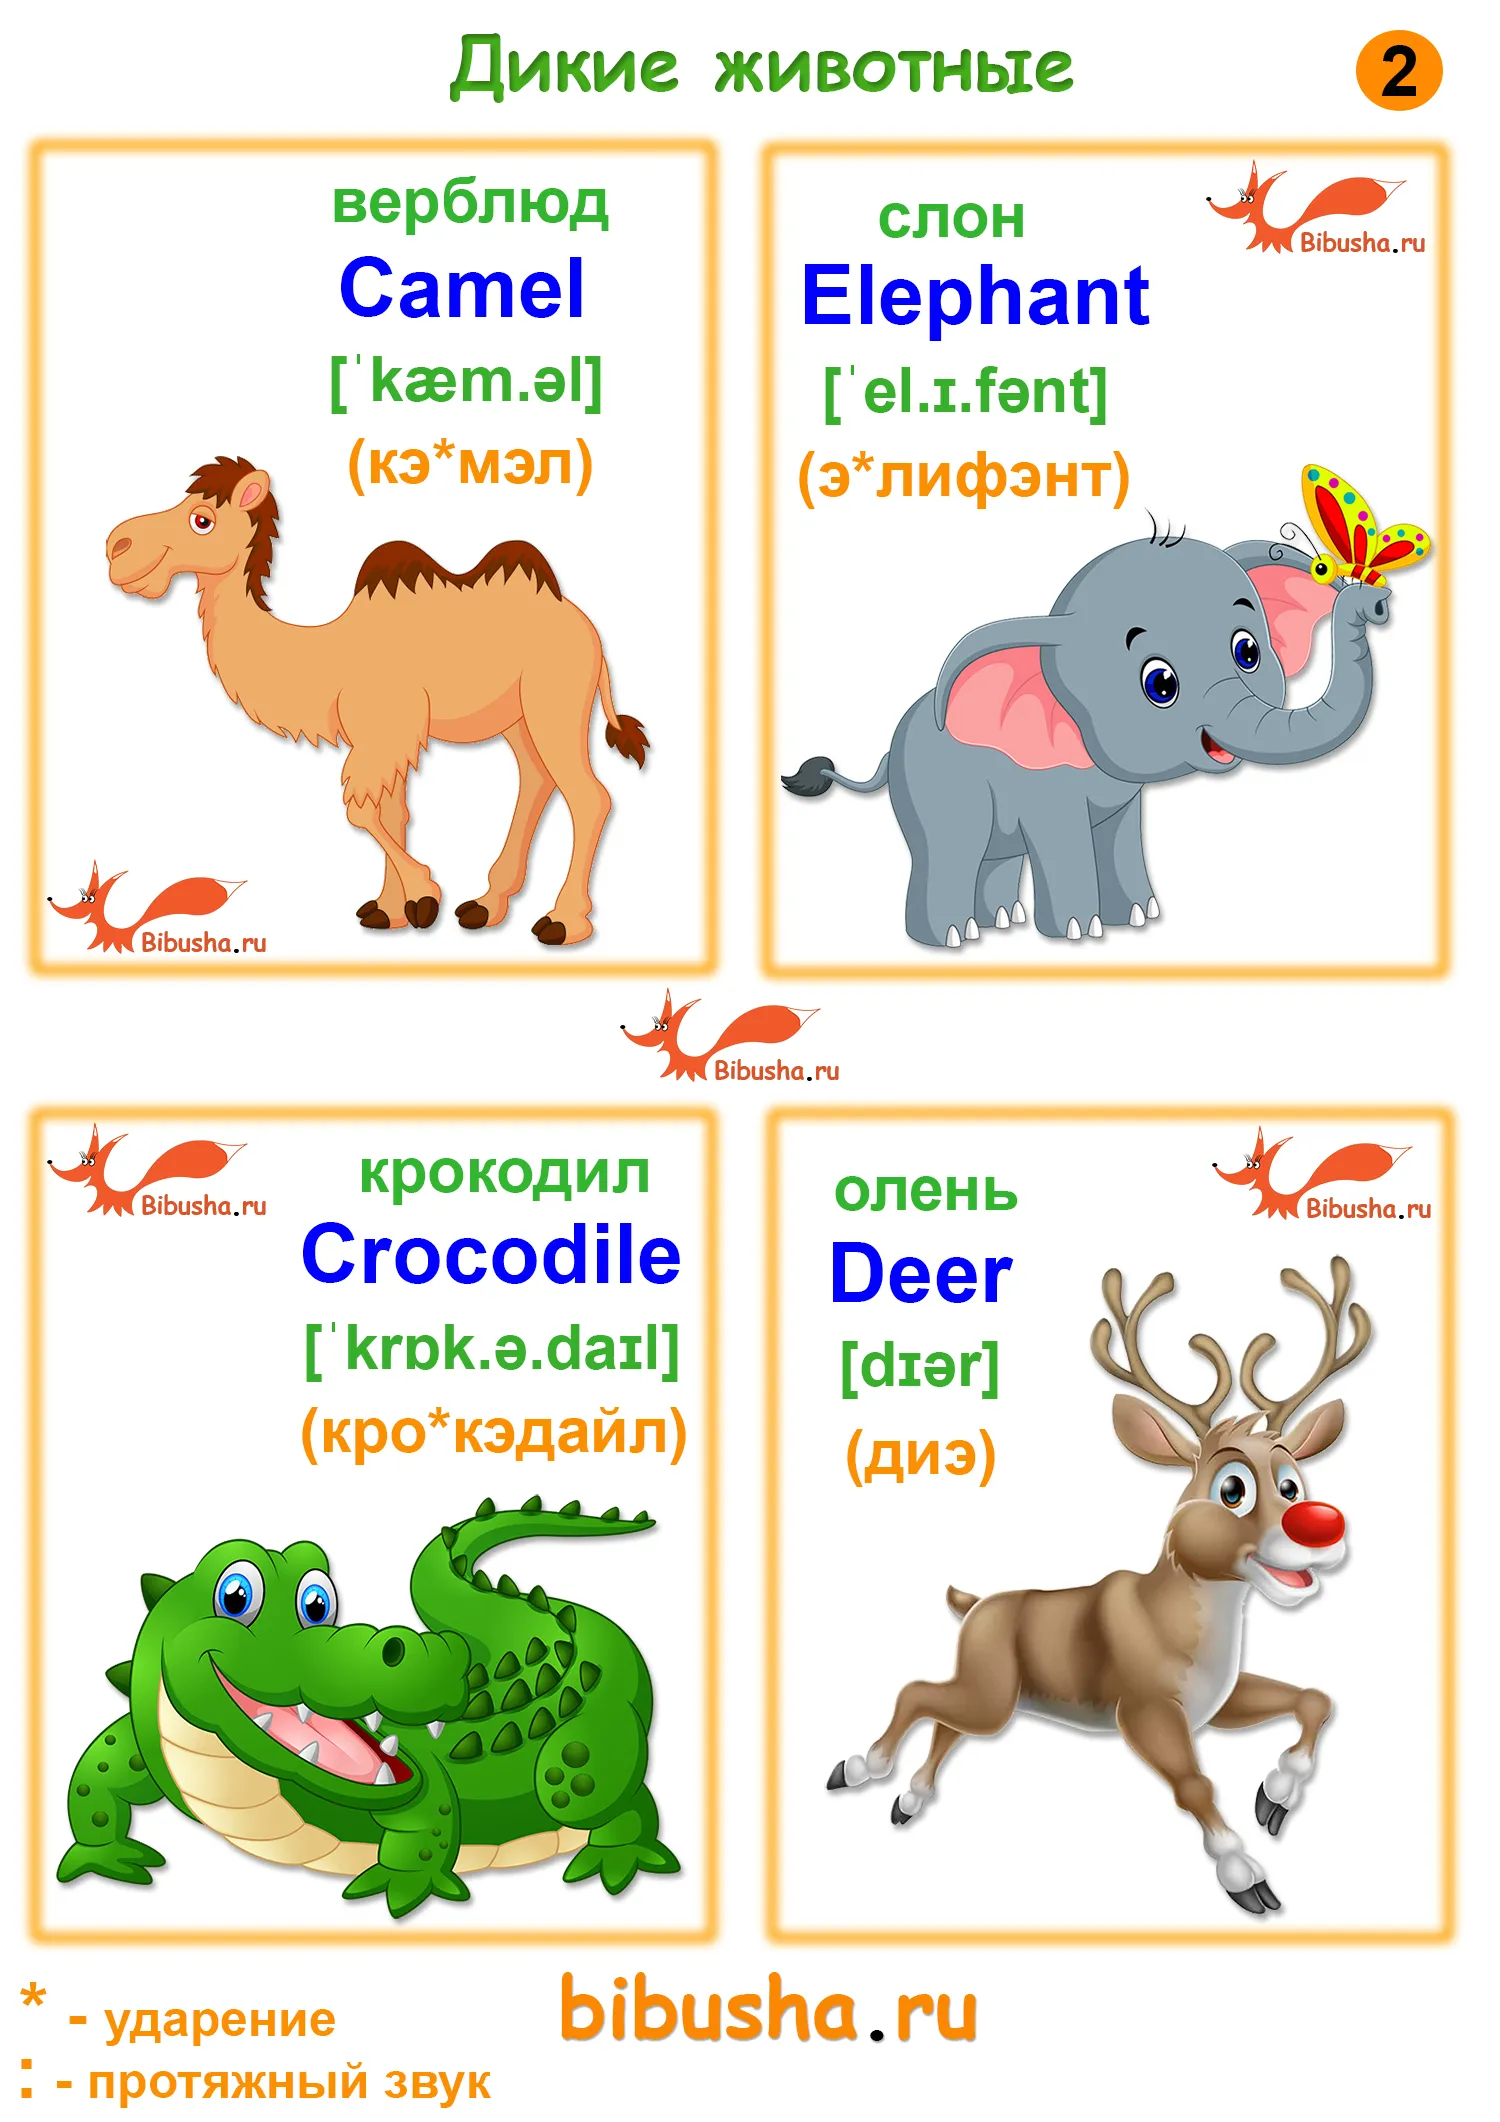 Elephant перевод с английского. Карточки на английском. Животные по английскому. Английский для малышей карточки. Английский для детей карто.